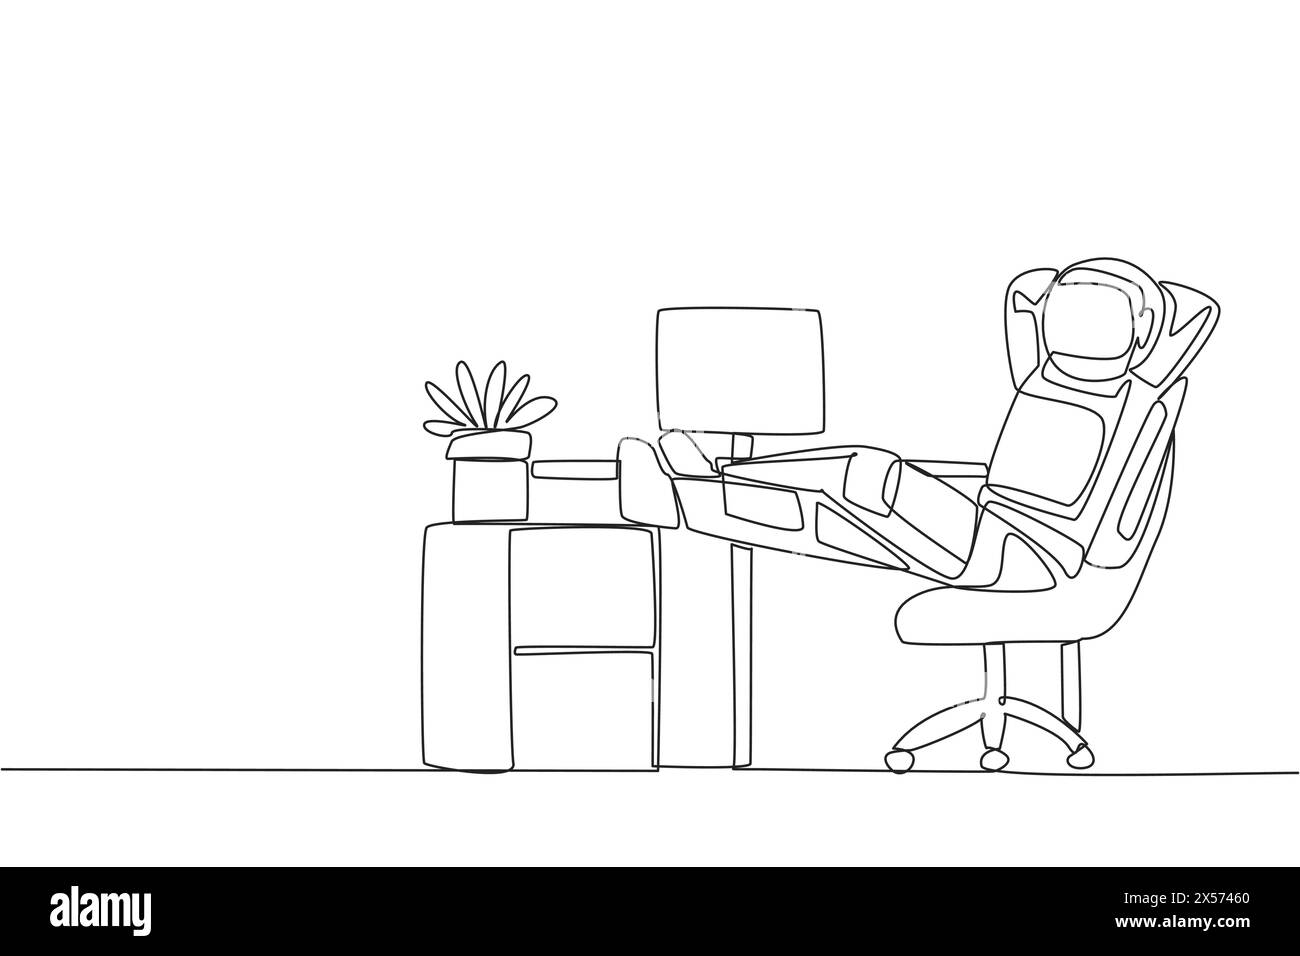 Un astronauta che disegna una linea continua siede su una sedia da lavoro con le mani dietro la testa e le gambe sollevate sulla scrivania. Rilassante. Prenditi una pausa dalla disfatta Illustrazione Vettoriale